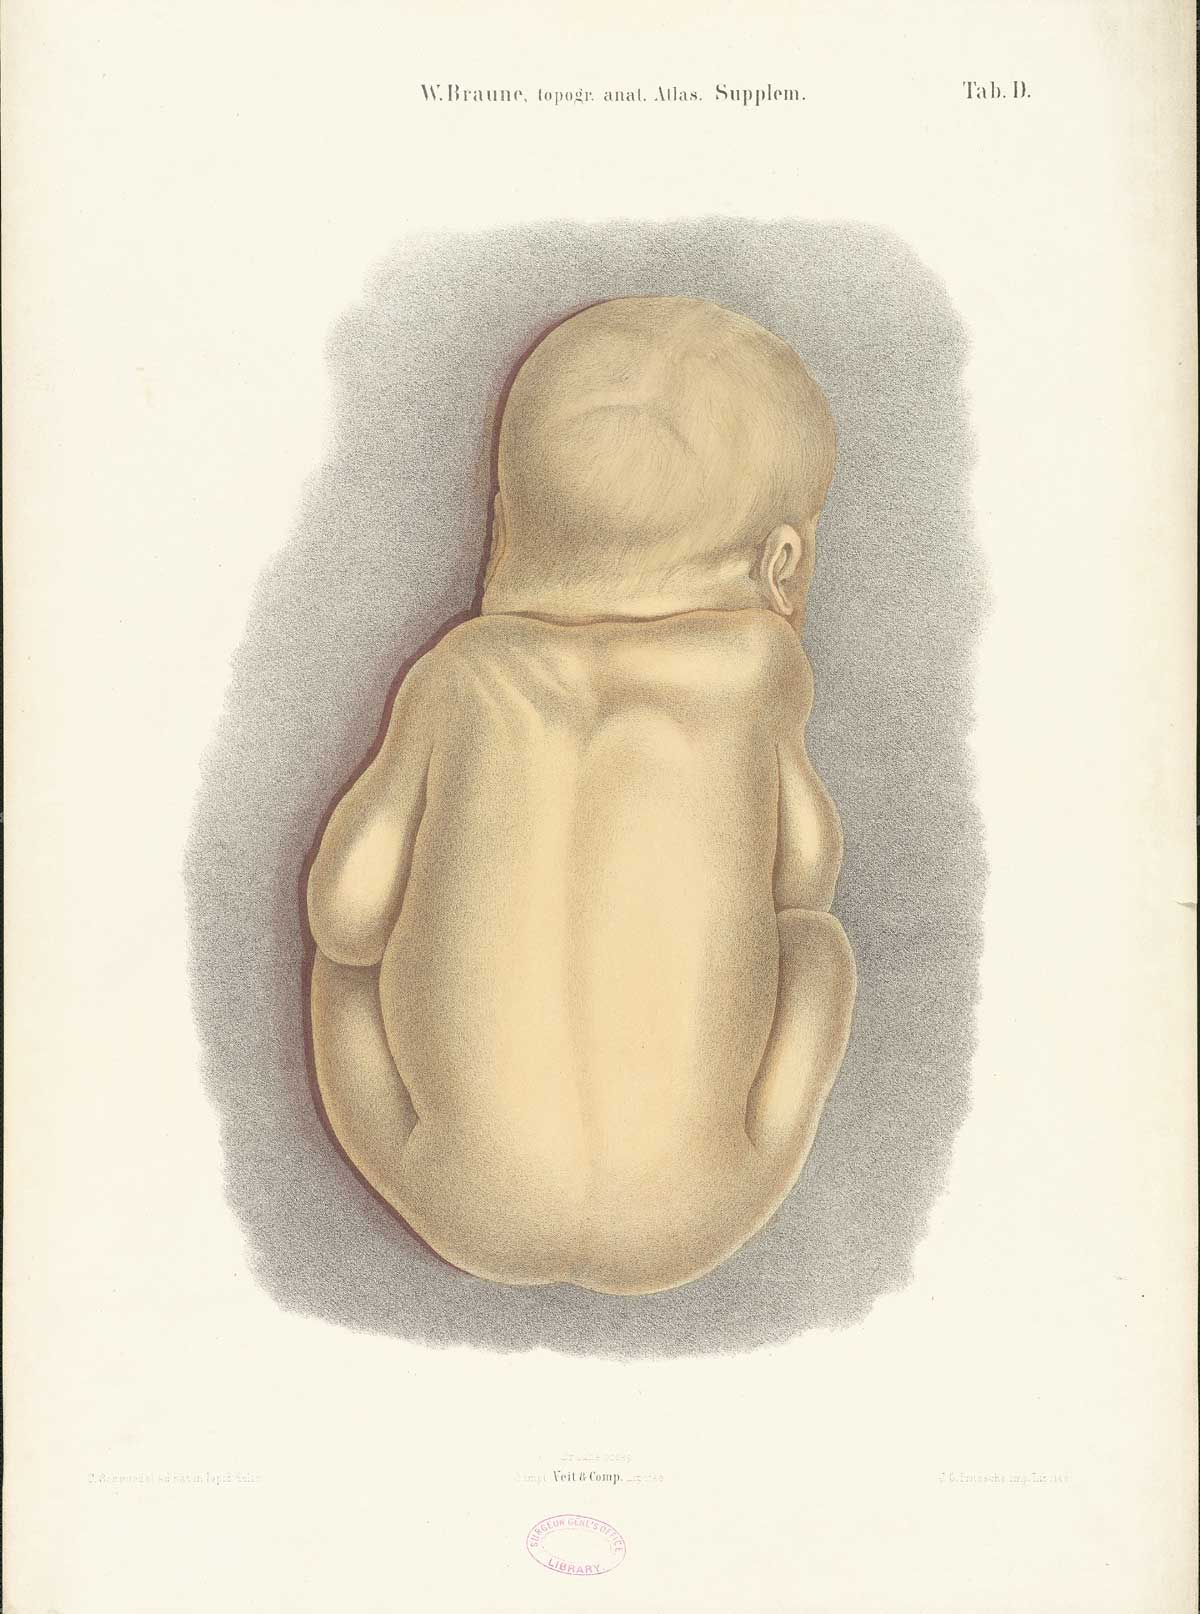 Chromolithograph of a fully developed fetus viewed from the back, from Wilhelm Braune’s Die Lage des Uterus und Foetus Ende der Schwangerschaft, nach durchschnitten an Gefrornen Cadavern, Leipzig, 1872.